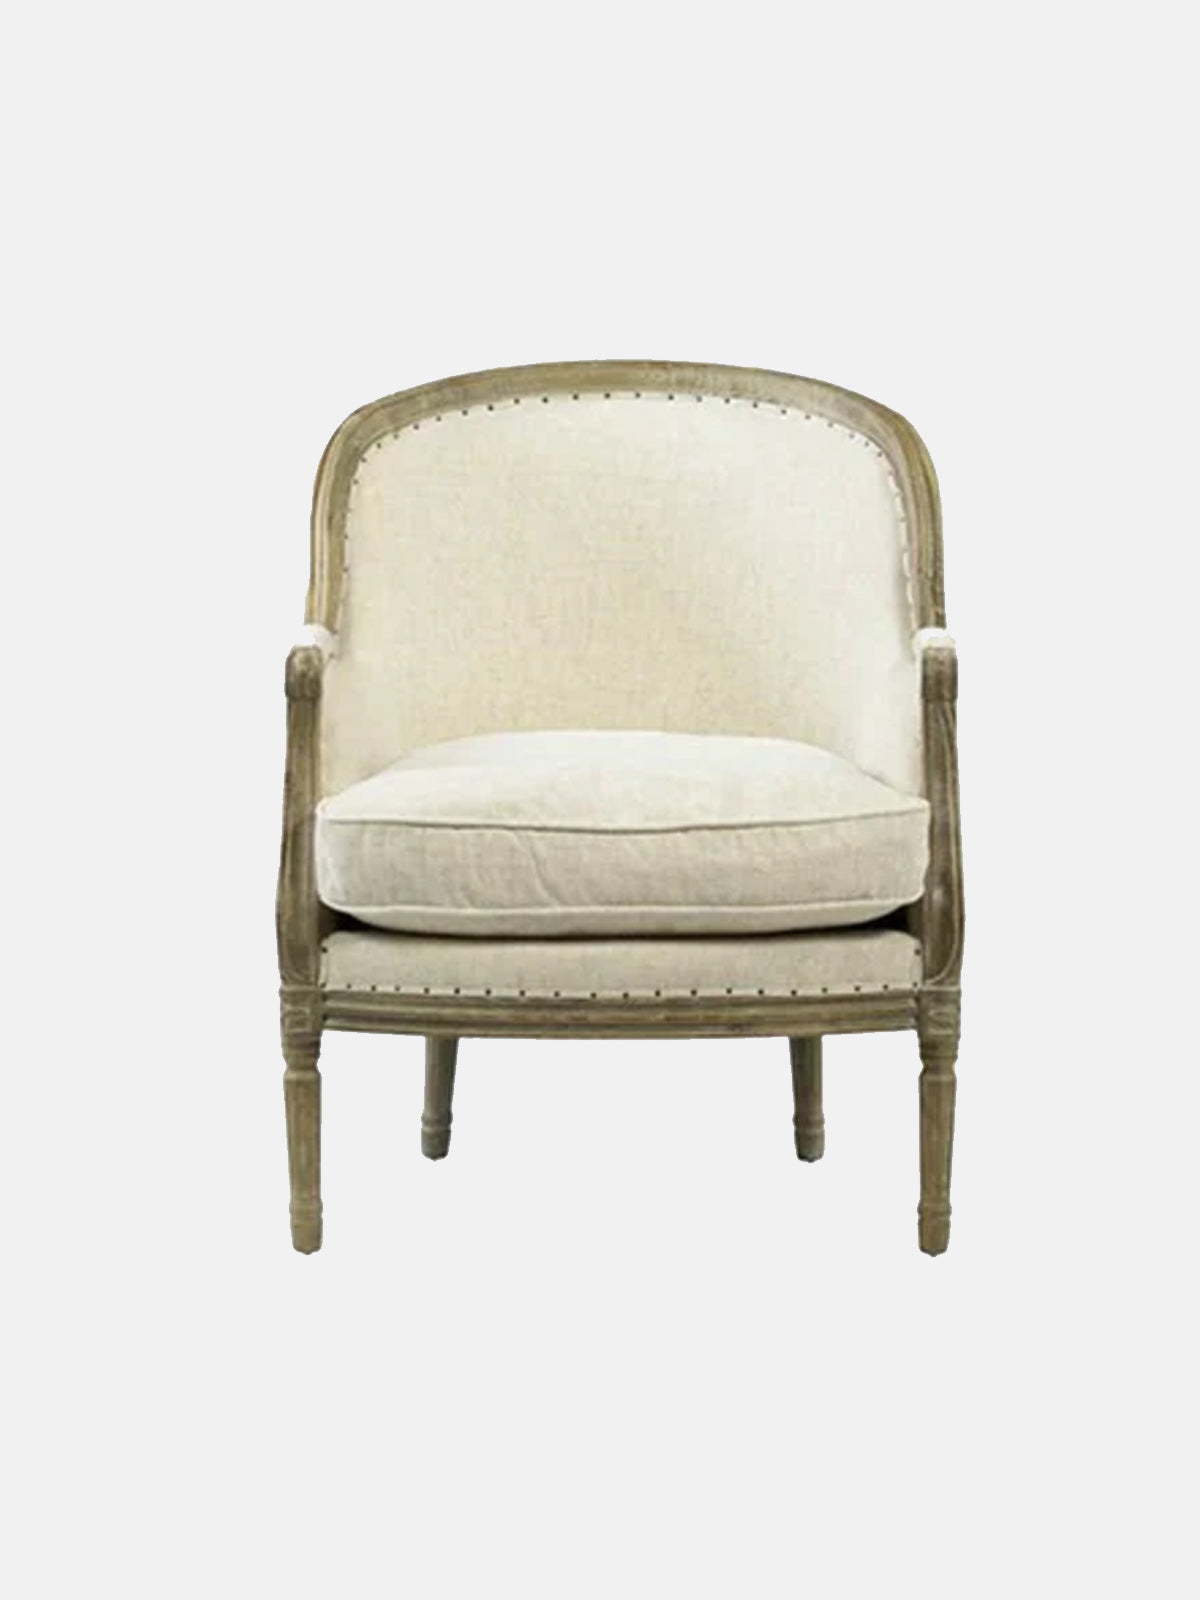 Savannah Chair